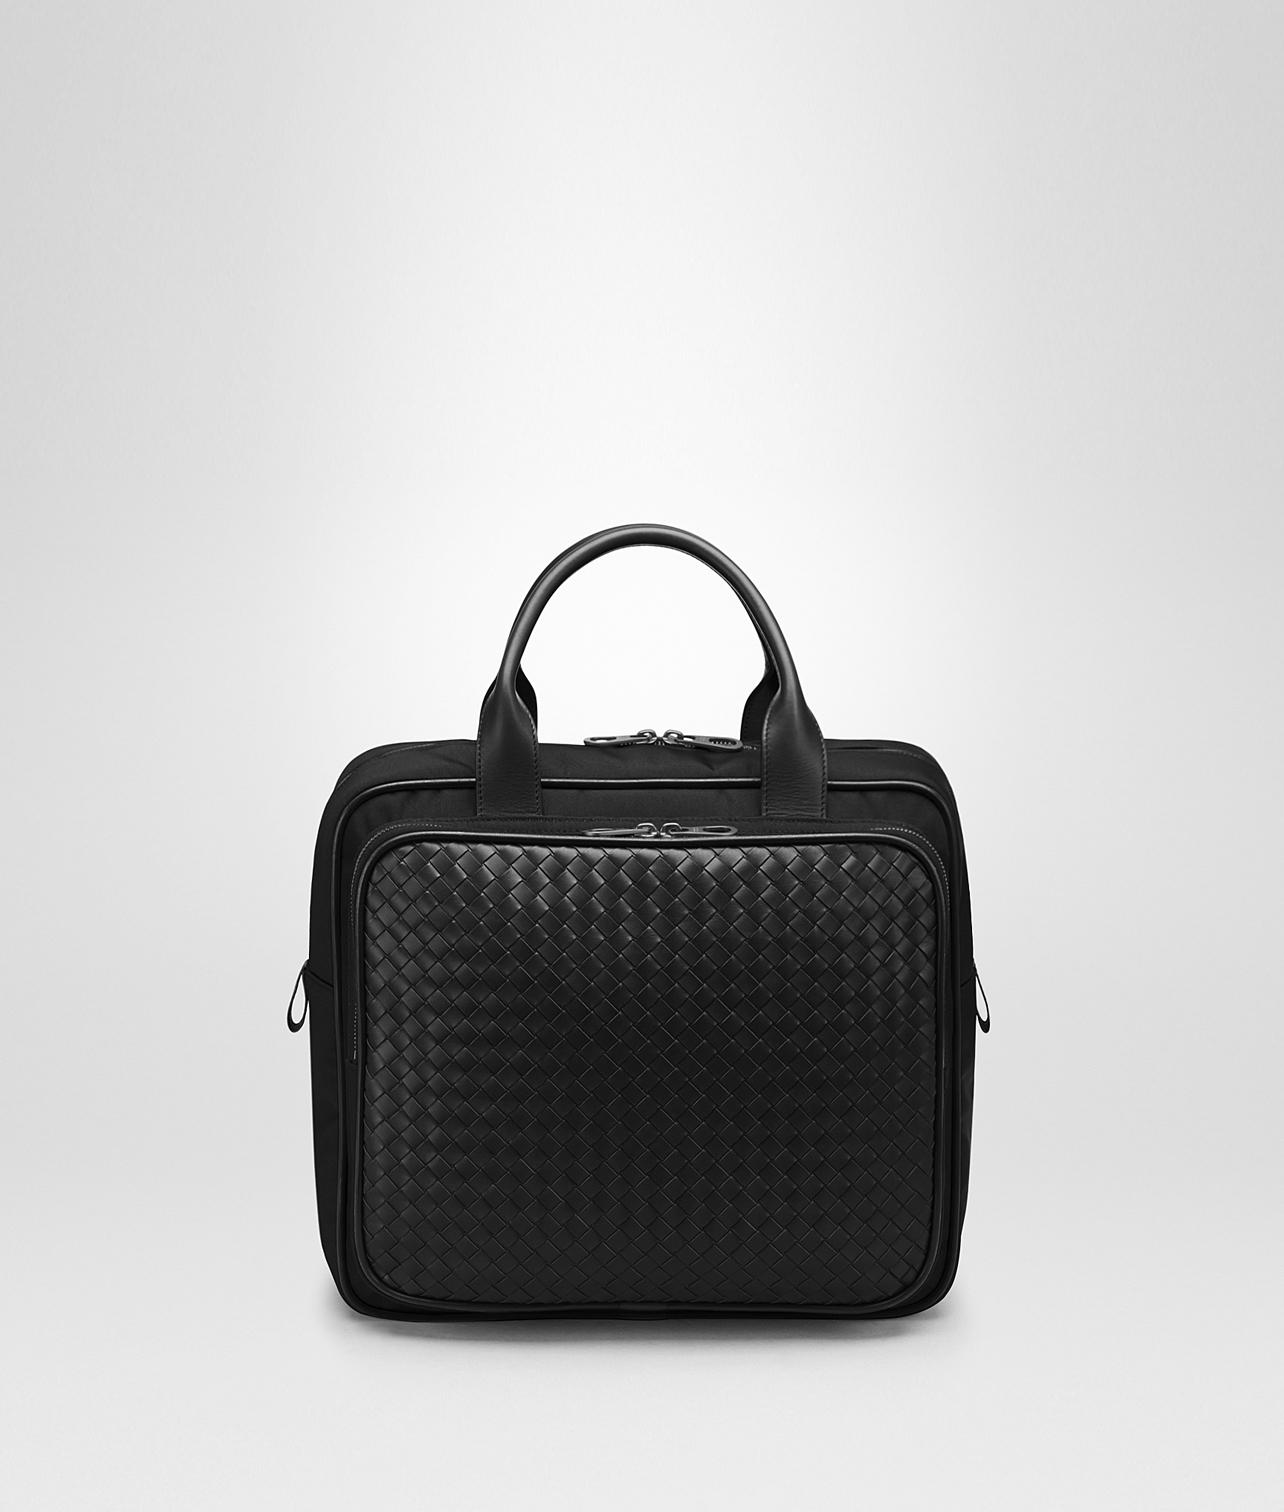 Bottega Canvas Travel Bag in Nero (Black) for Men